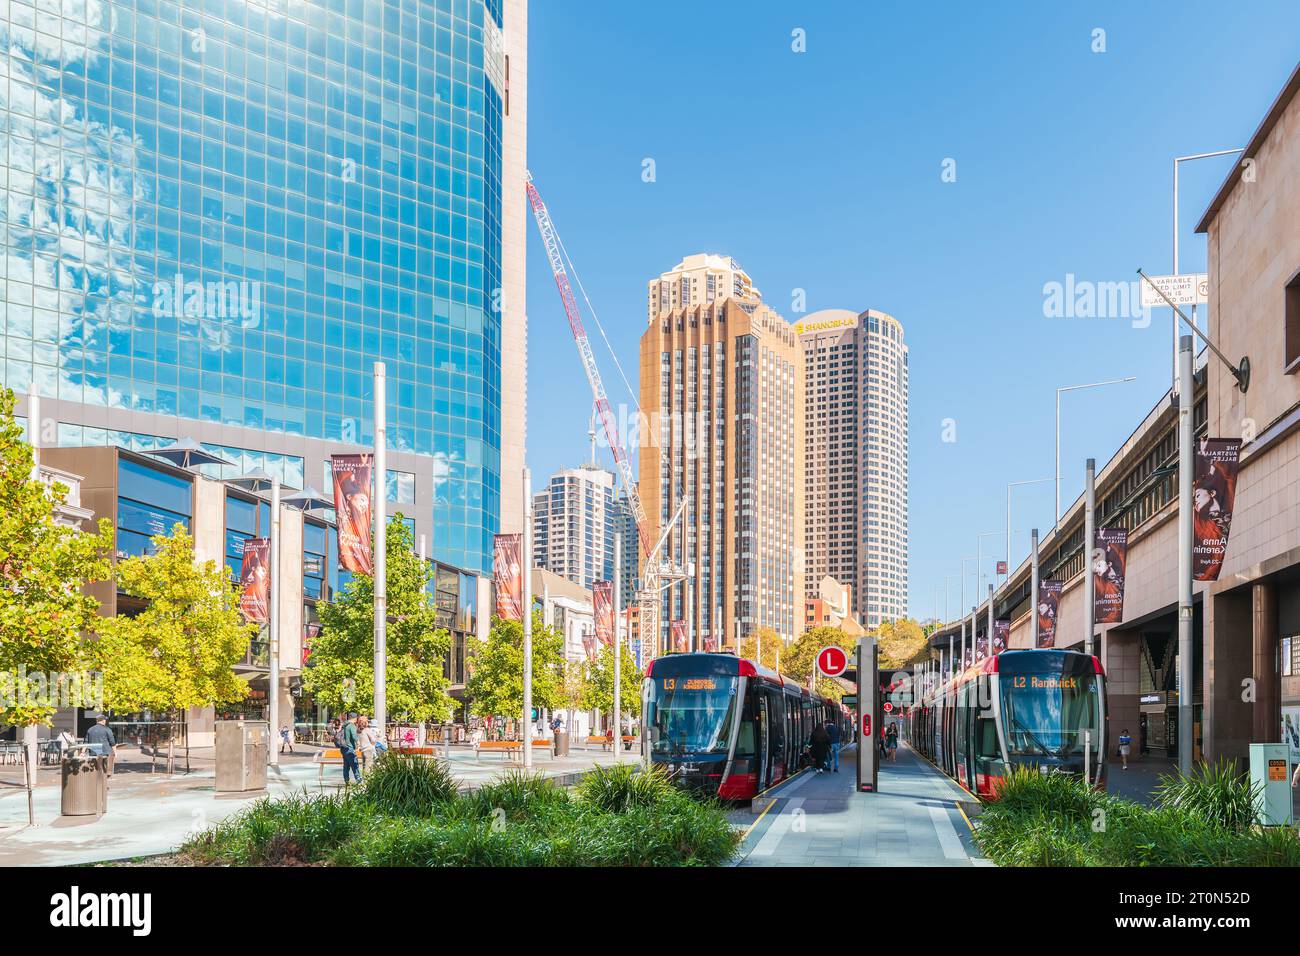 Sydney, NSW, Australia - 17 aprile 2022: Stazione del tram leggero Circular Quay con persone che salgono sul tram in una giornata luminosa Foto Stock